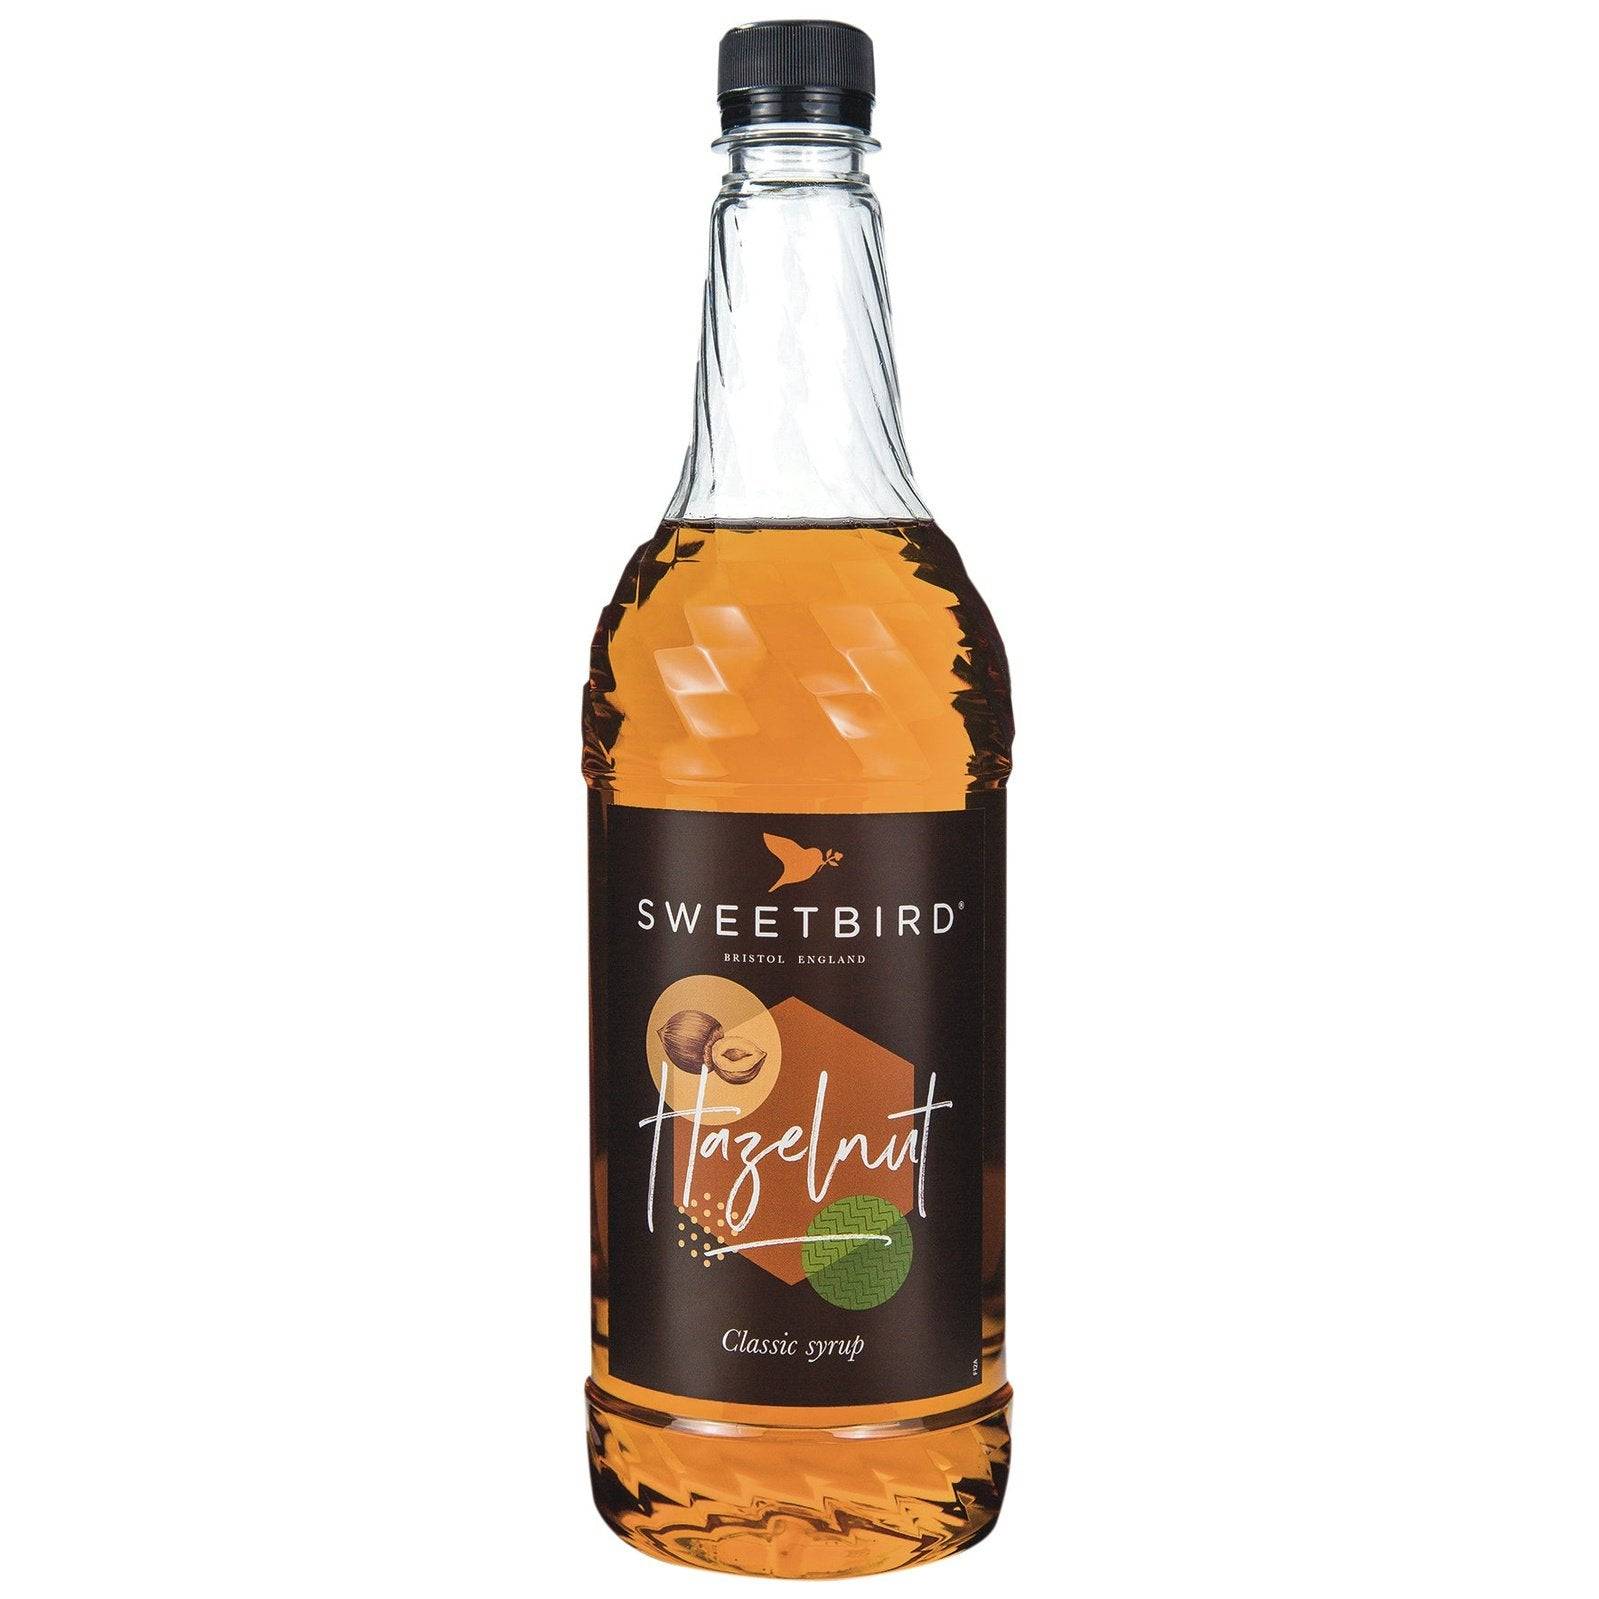 Sweetbird - Hazelnut Syrup 1L